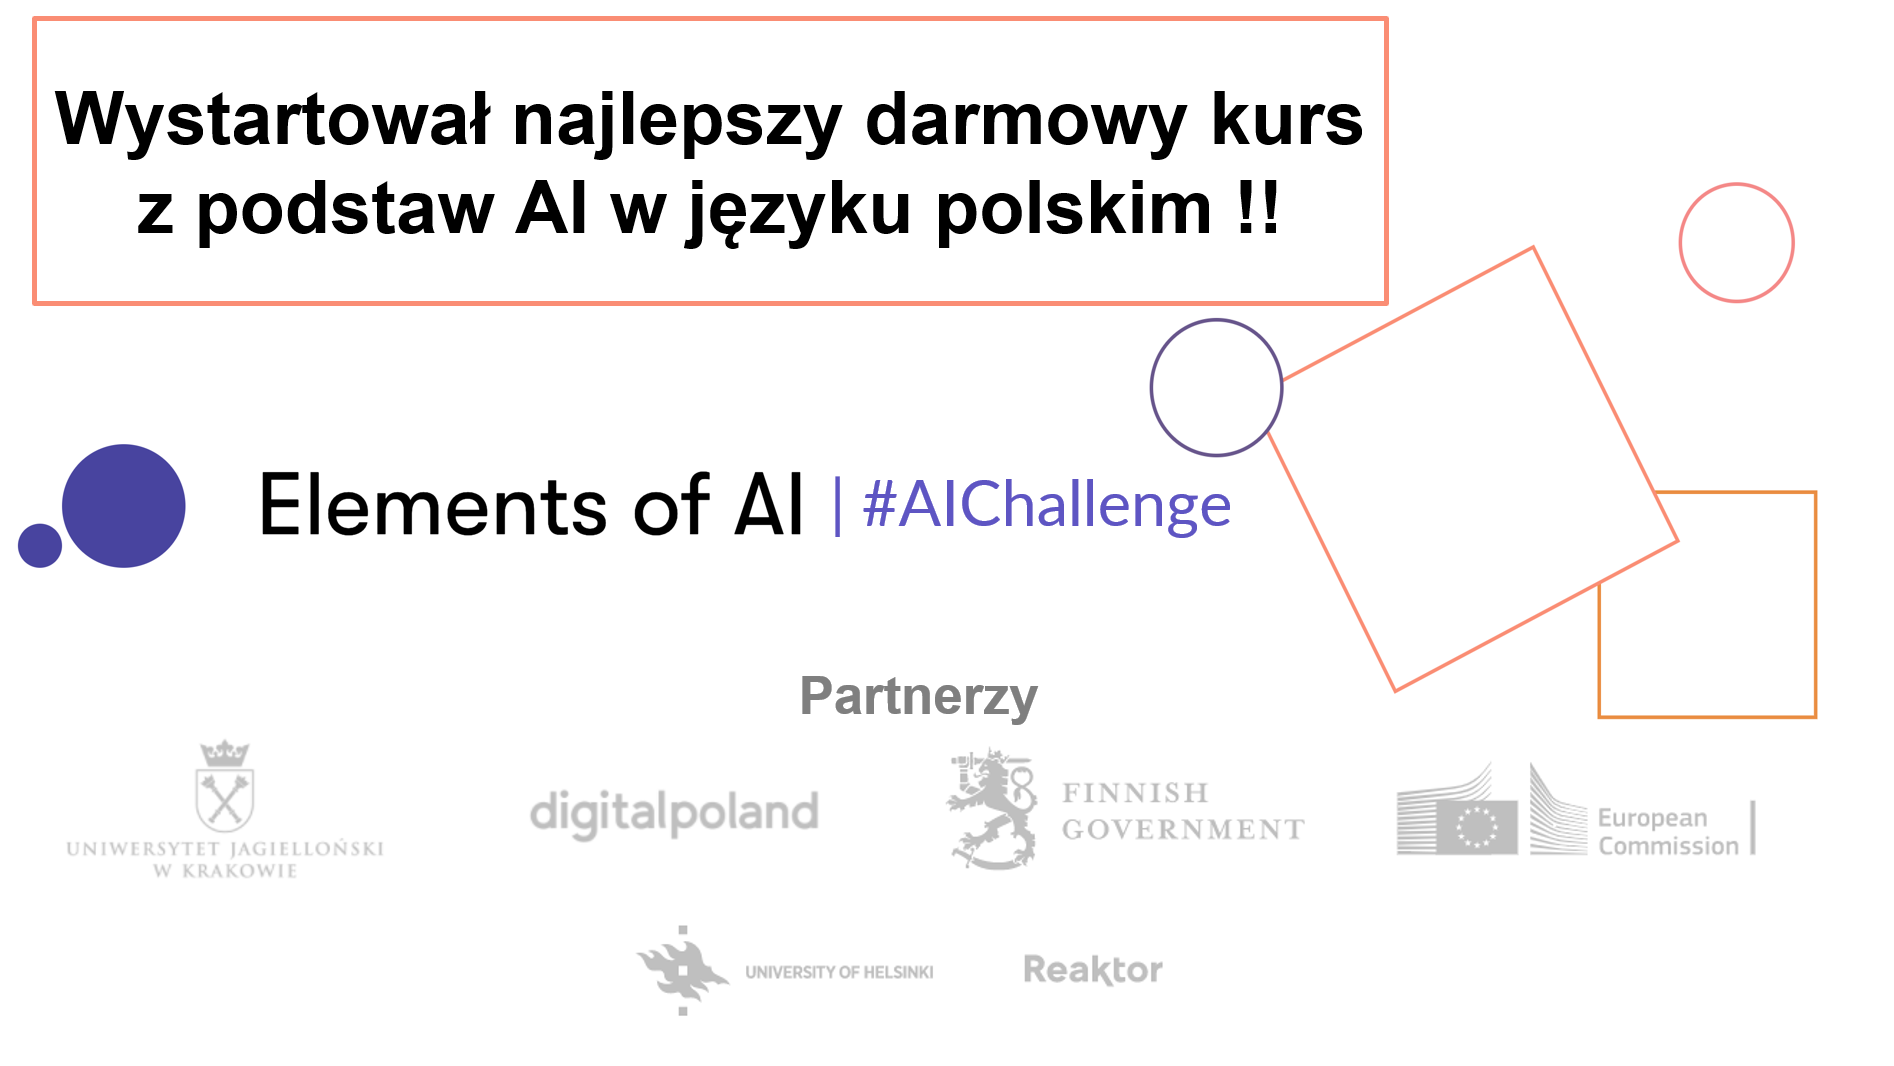 Elements of AI w Polsce i po polsku - serdecznie polecam!